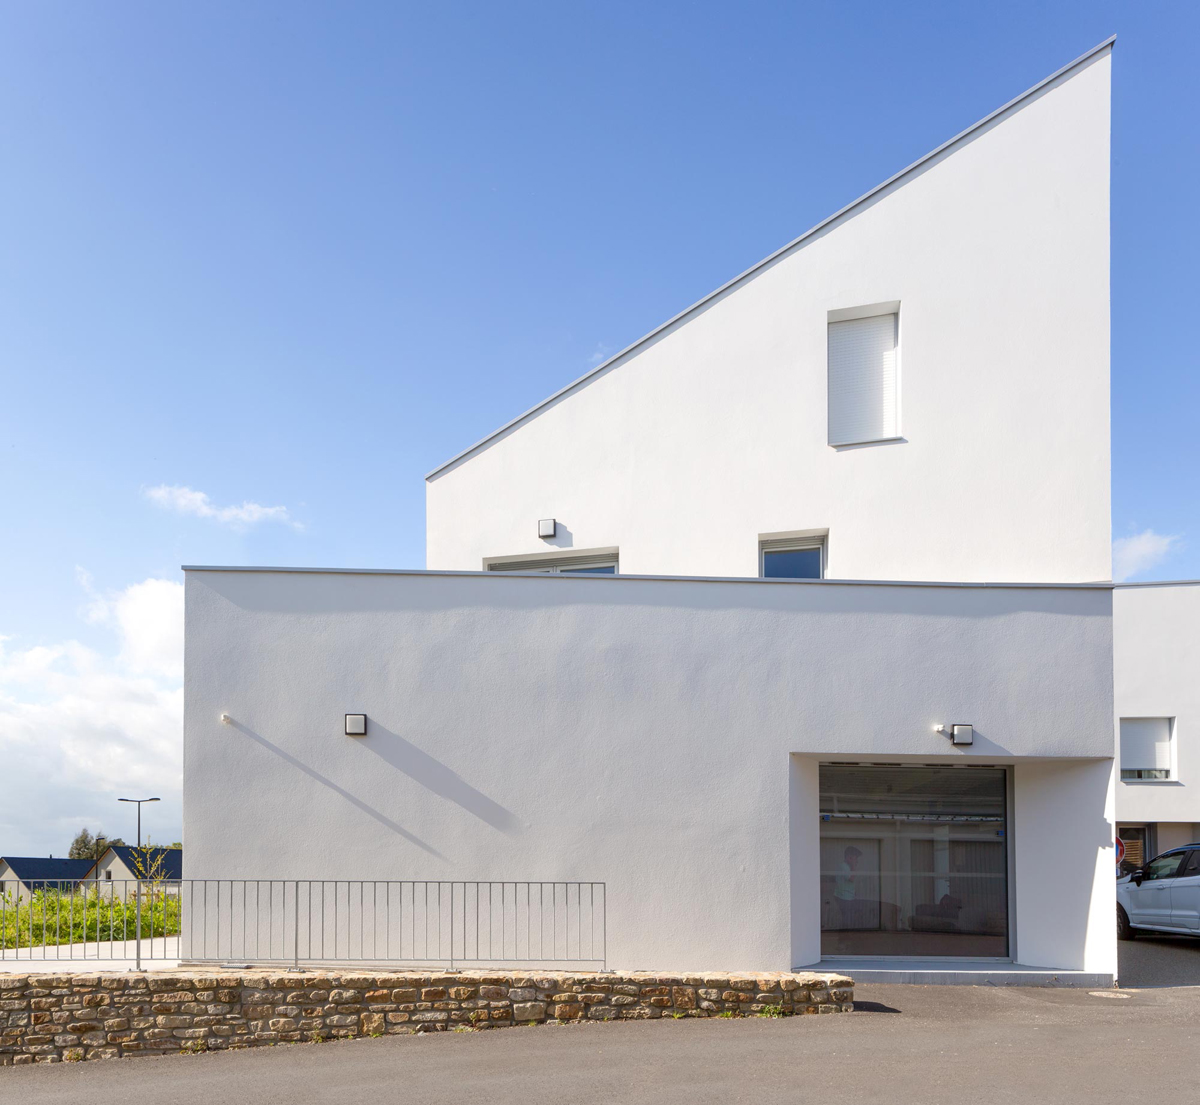  QUARTIER KERZEC  construction de 12 logements sociaux locatifs et d'une salle communale Ere Architecture - Architecte Quimperlé - Finistère